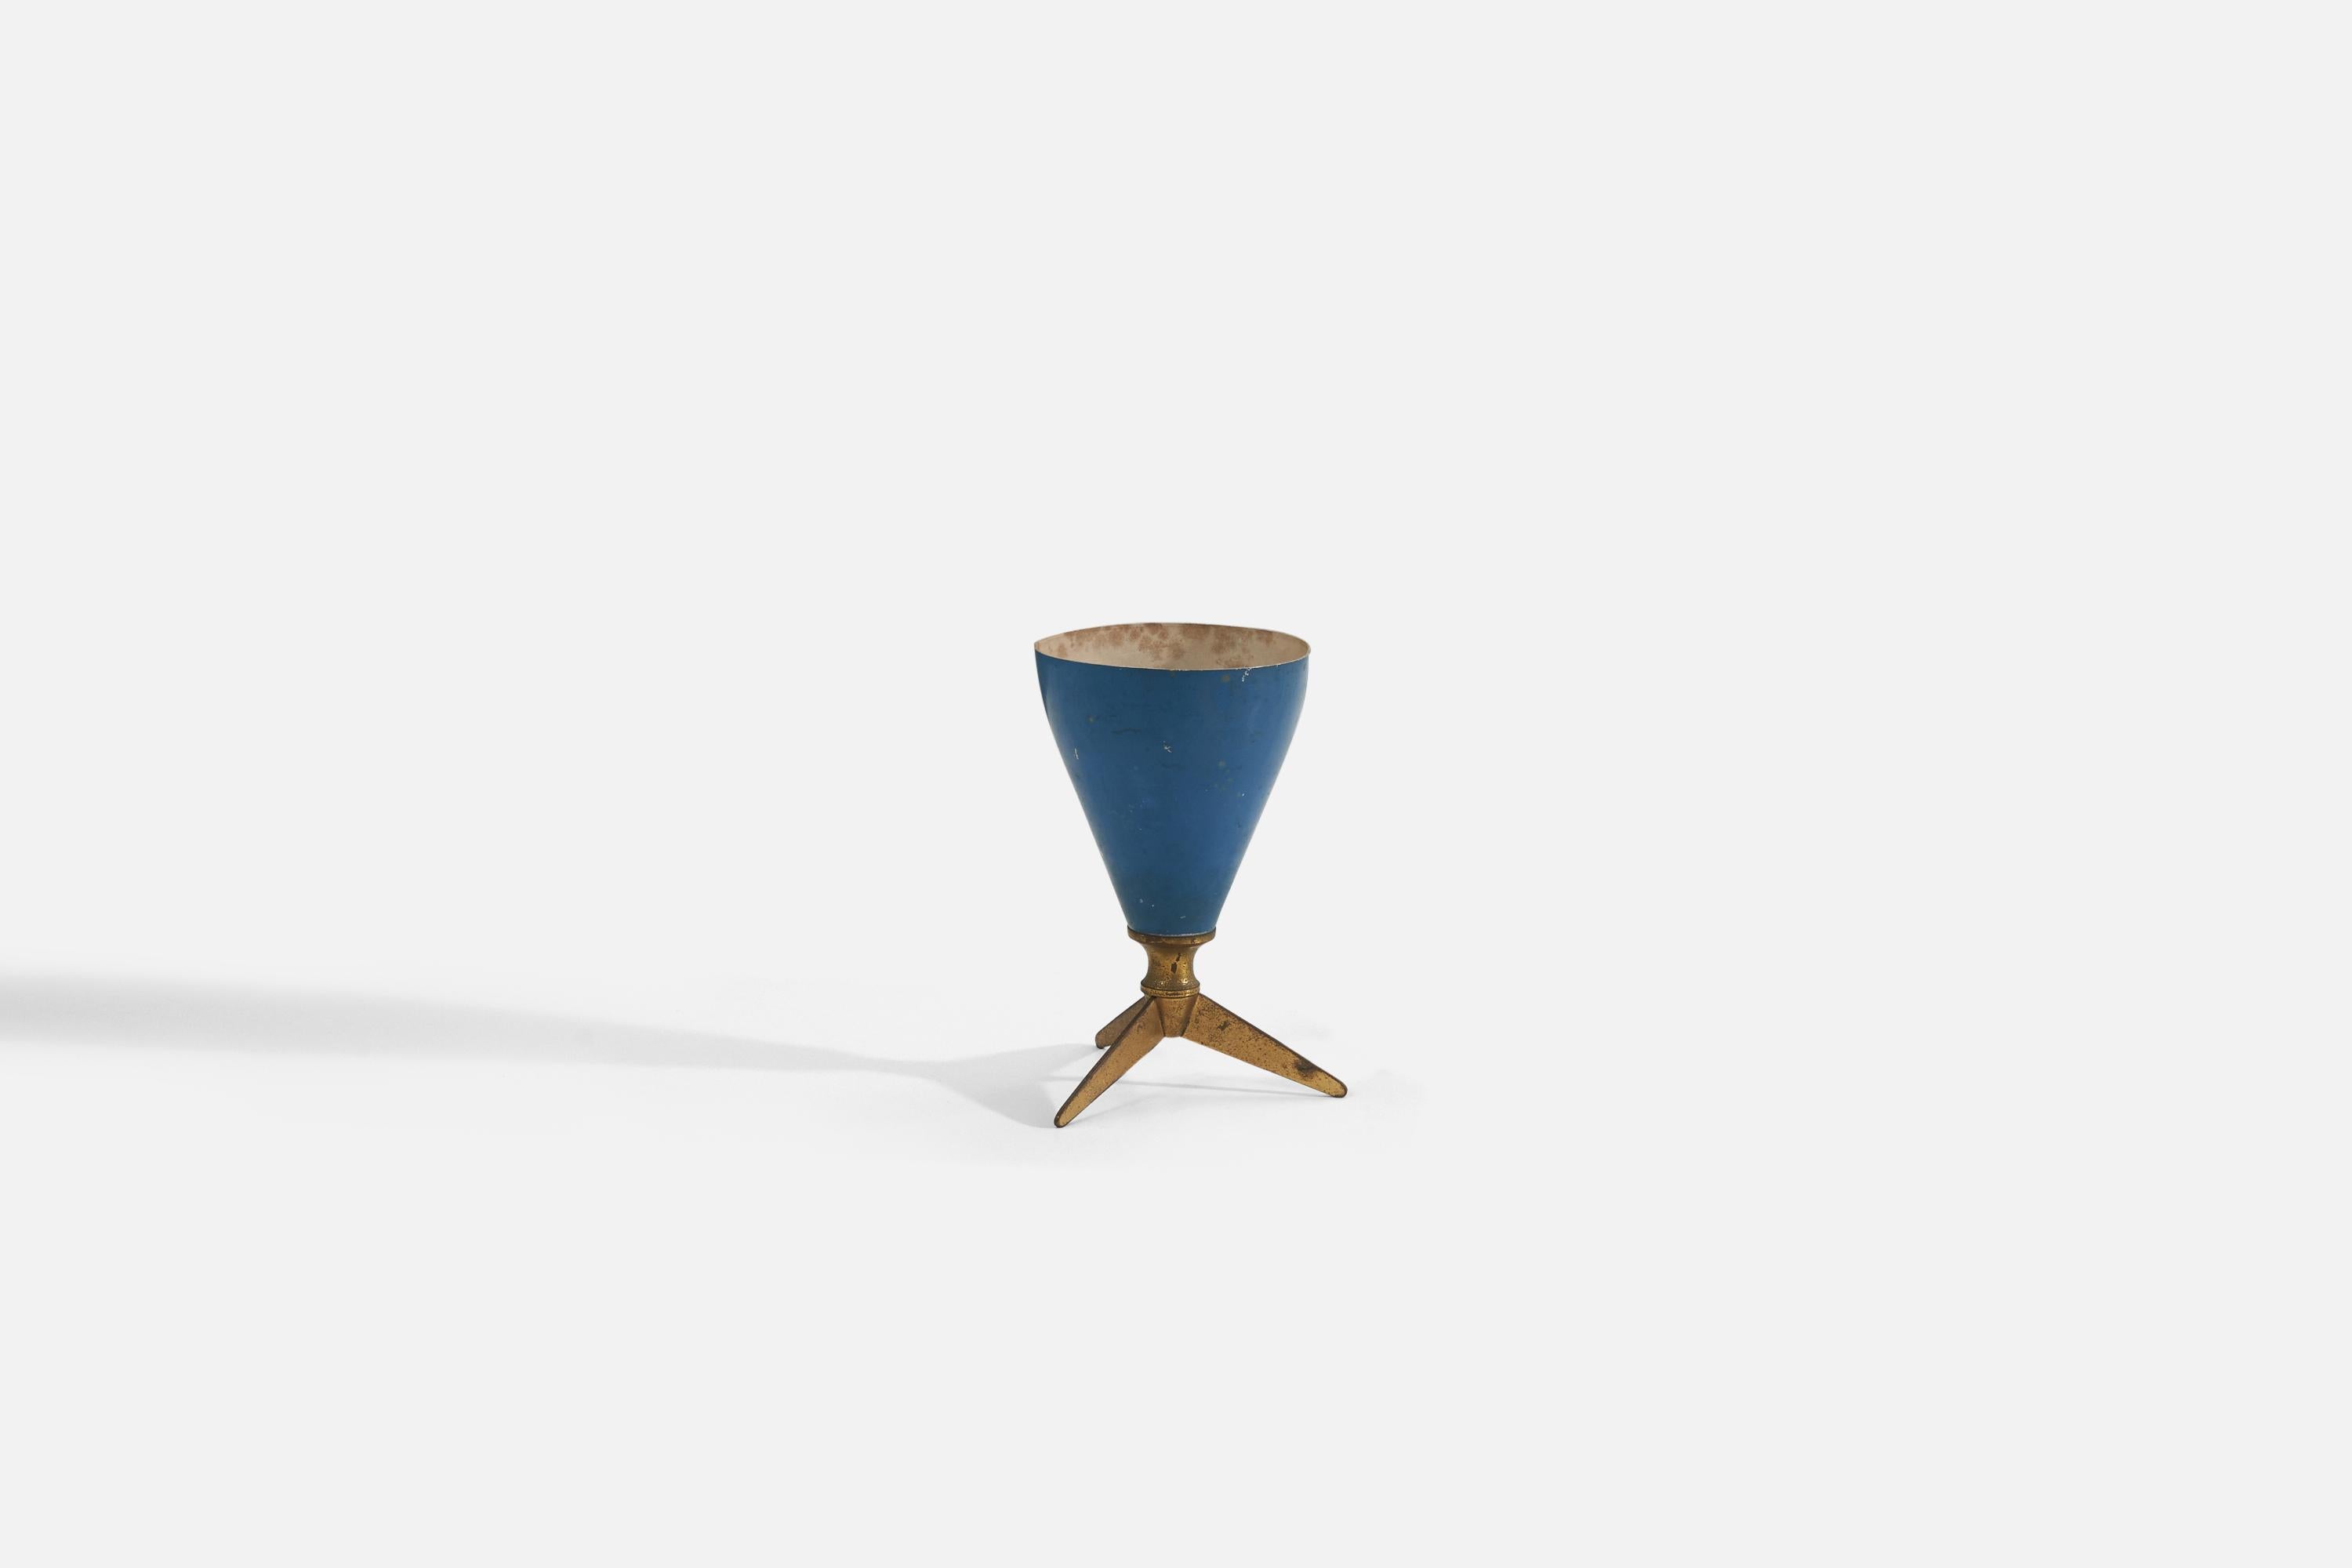 Une lampe de table conçue et produite en Italie dans les années 1950. La lampe comporte une base en laiton et un abat-jour en métal laqué bleu.